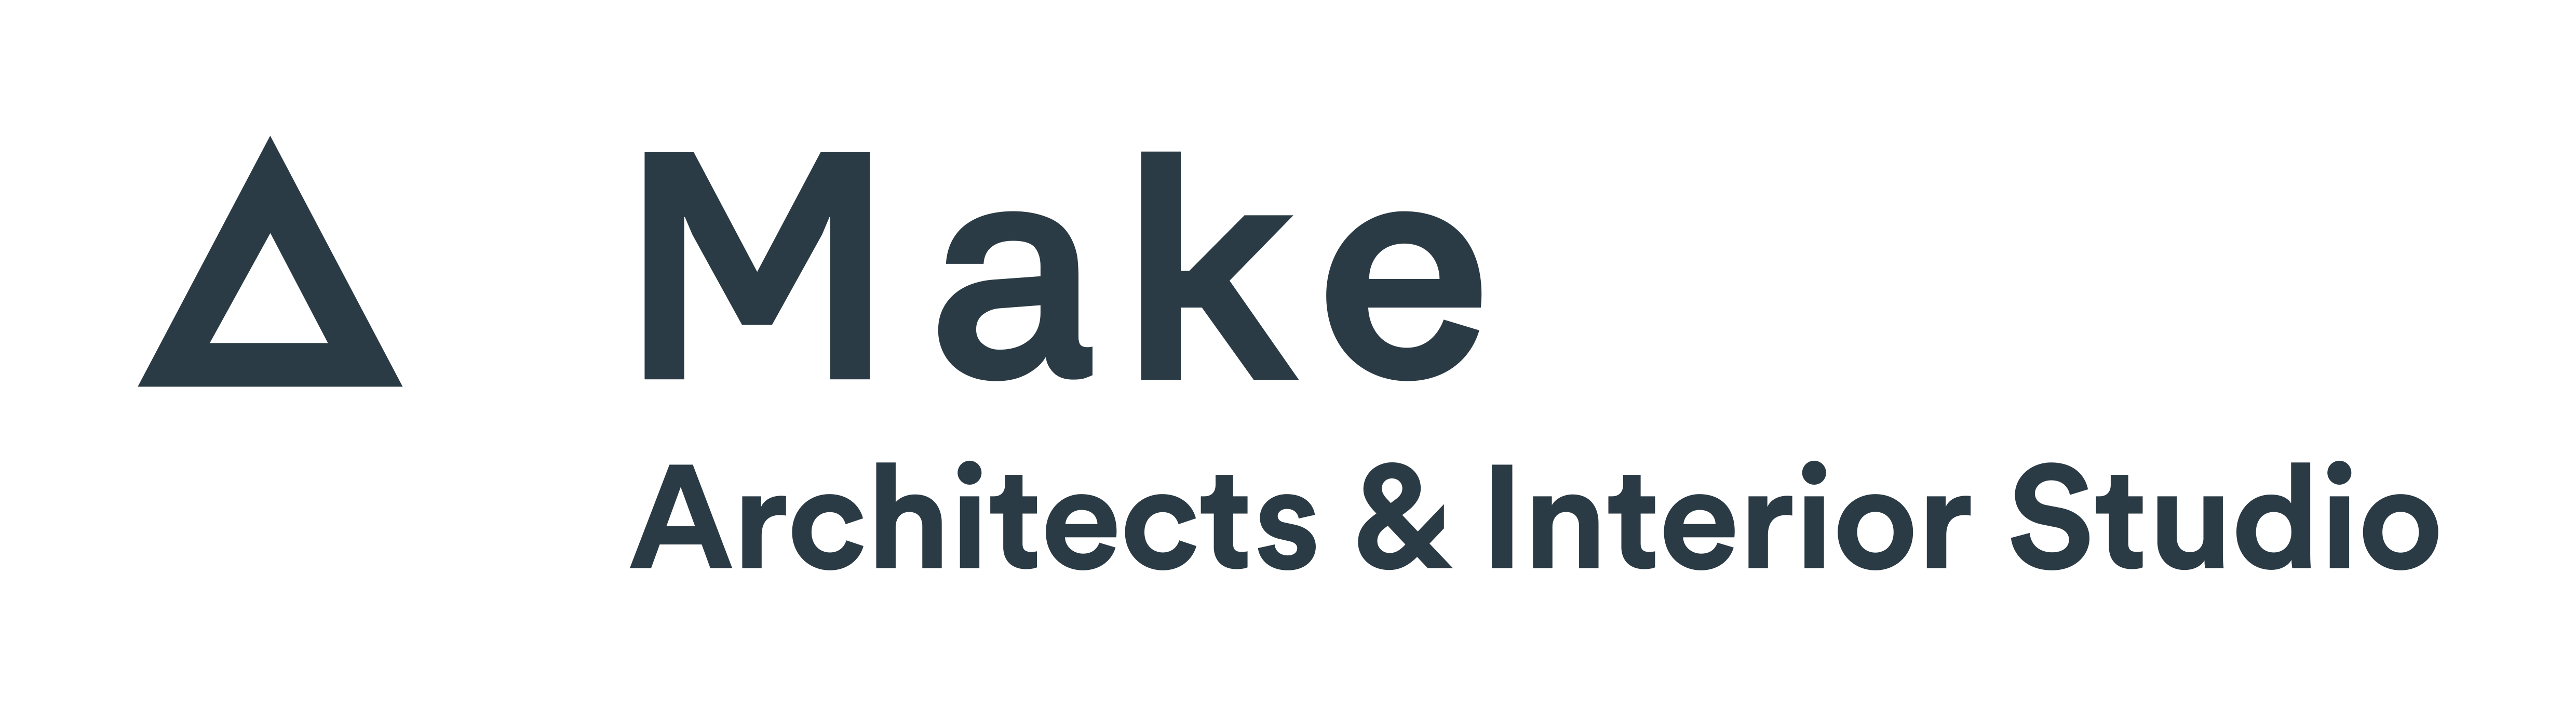 Make Architects